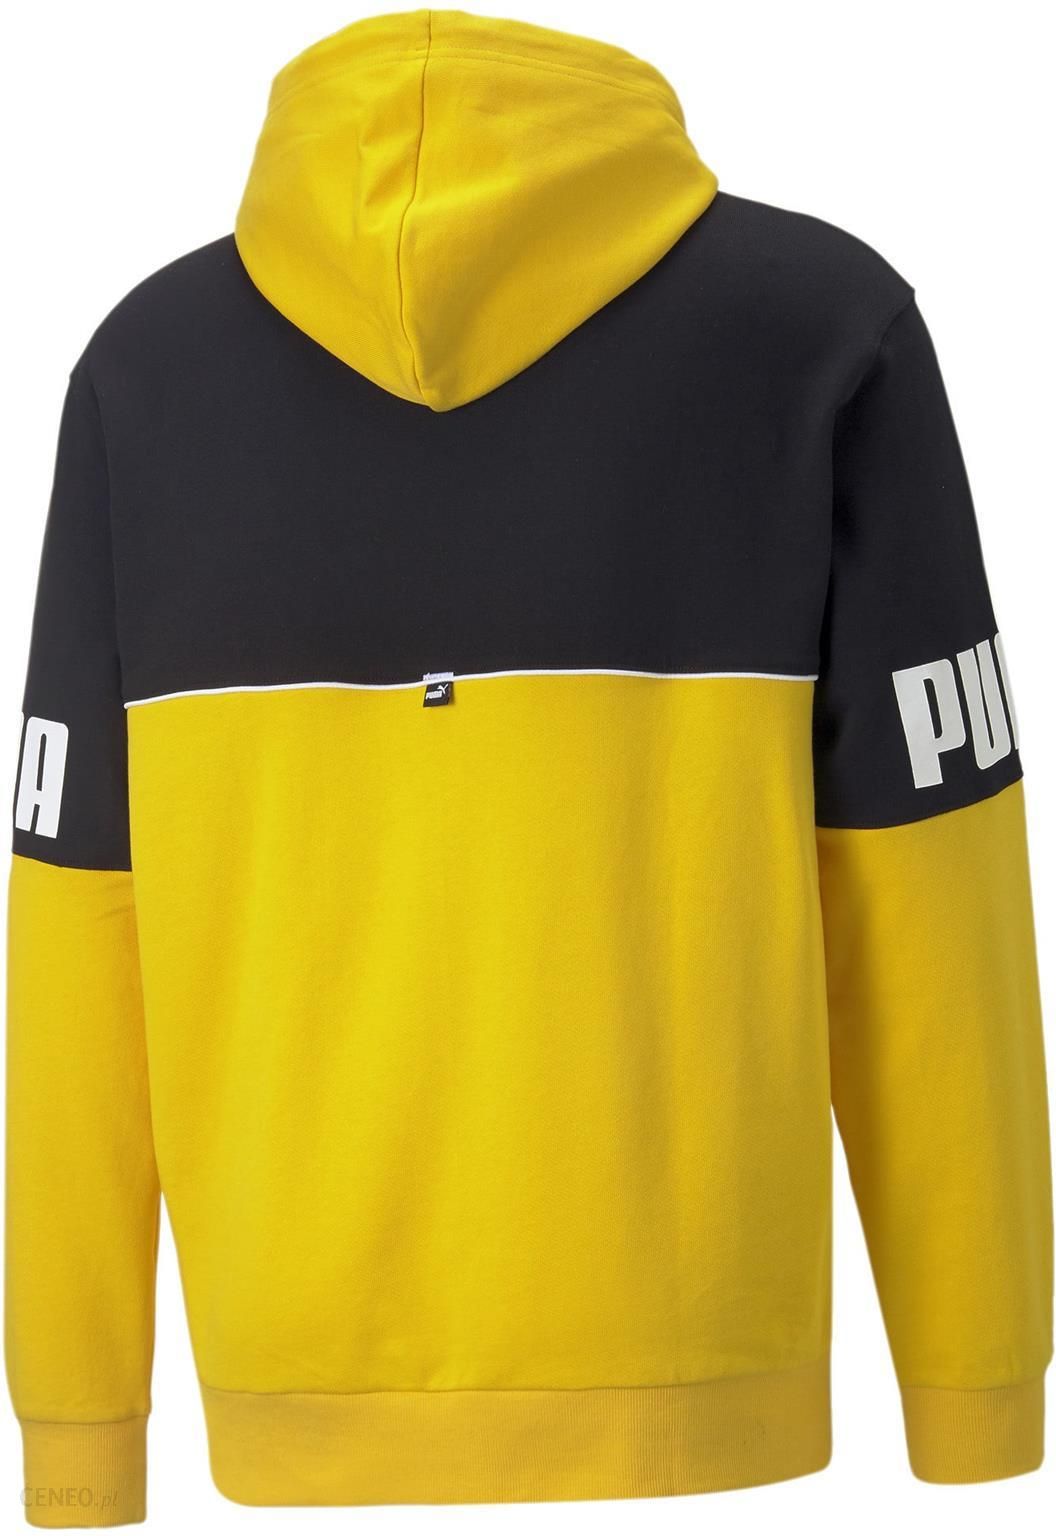 Bluza z kapturem męska Puma POWER COLORBLOCK żółta 84981239